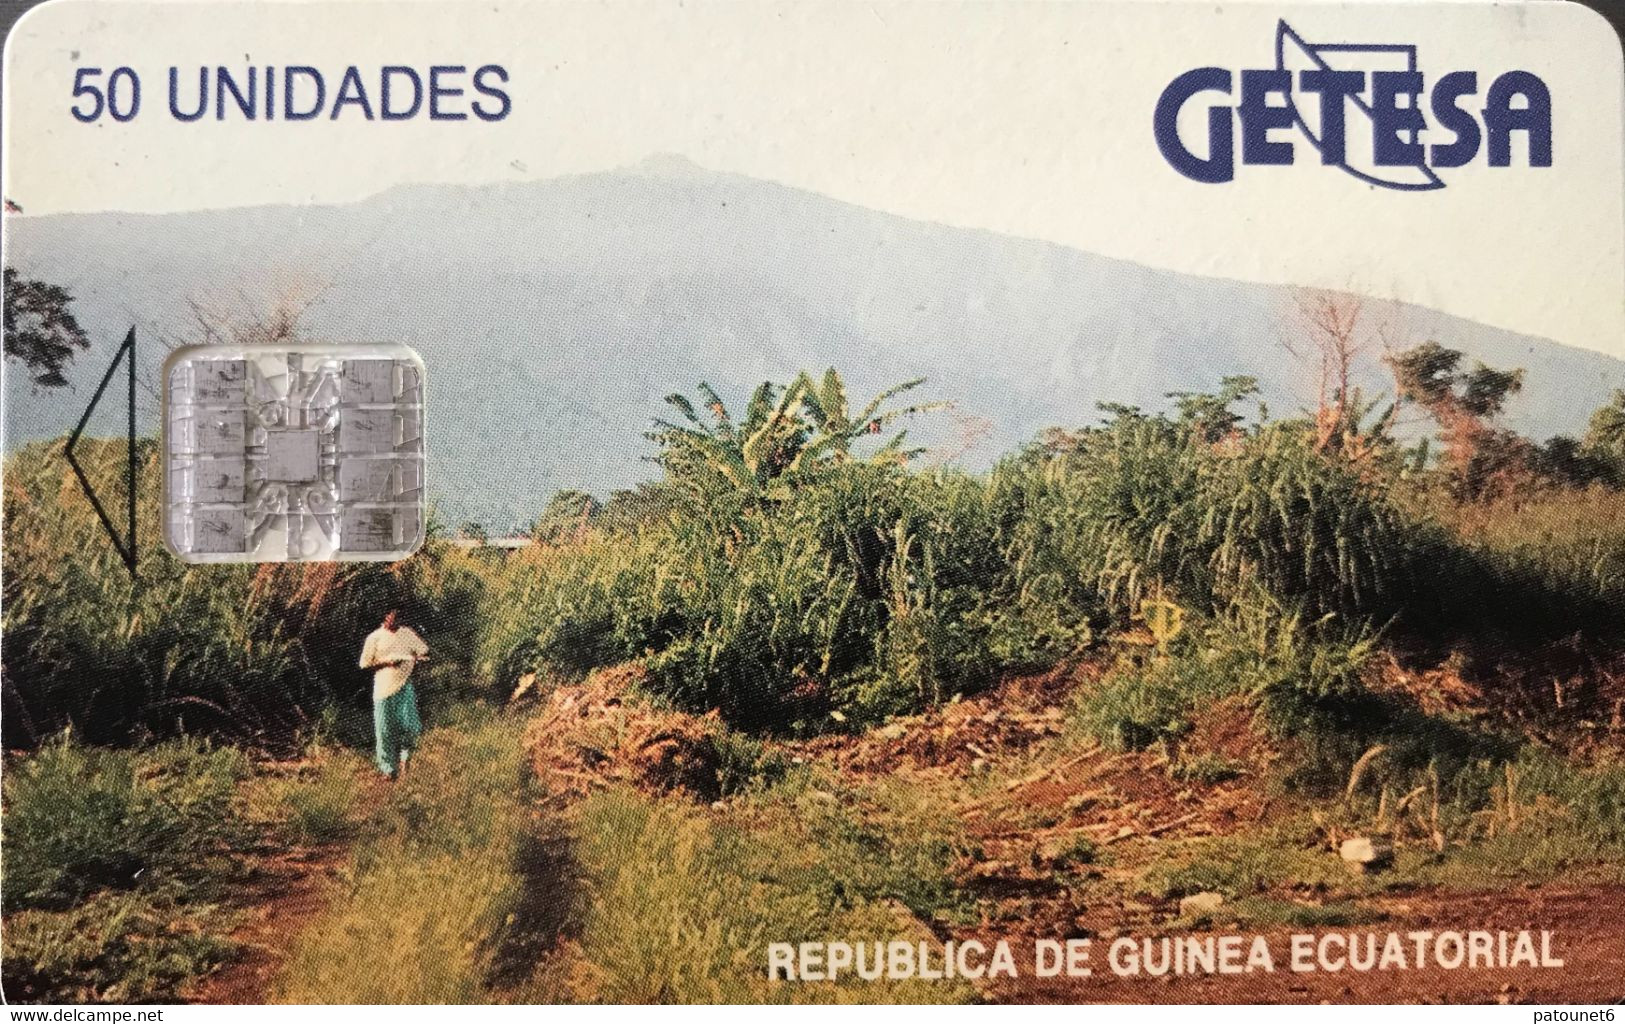 GUINEE-EQUATORIALE  -  Phonecard  -  GETESA - SC7 -  50 Unidades - Equatorial Guinea